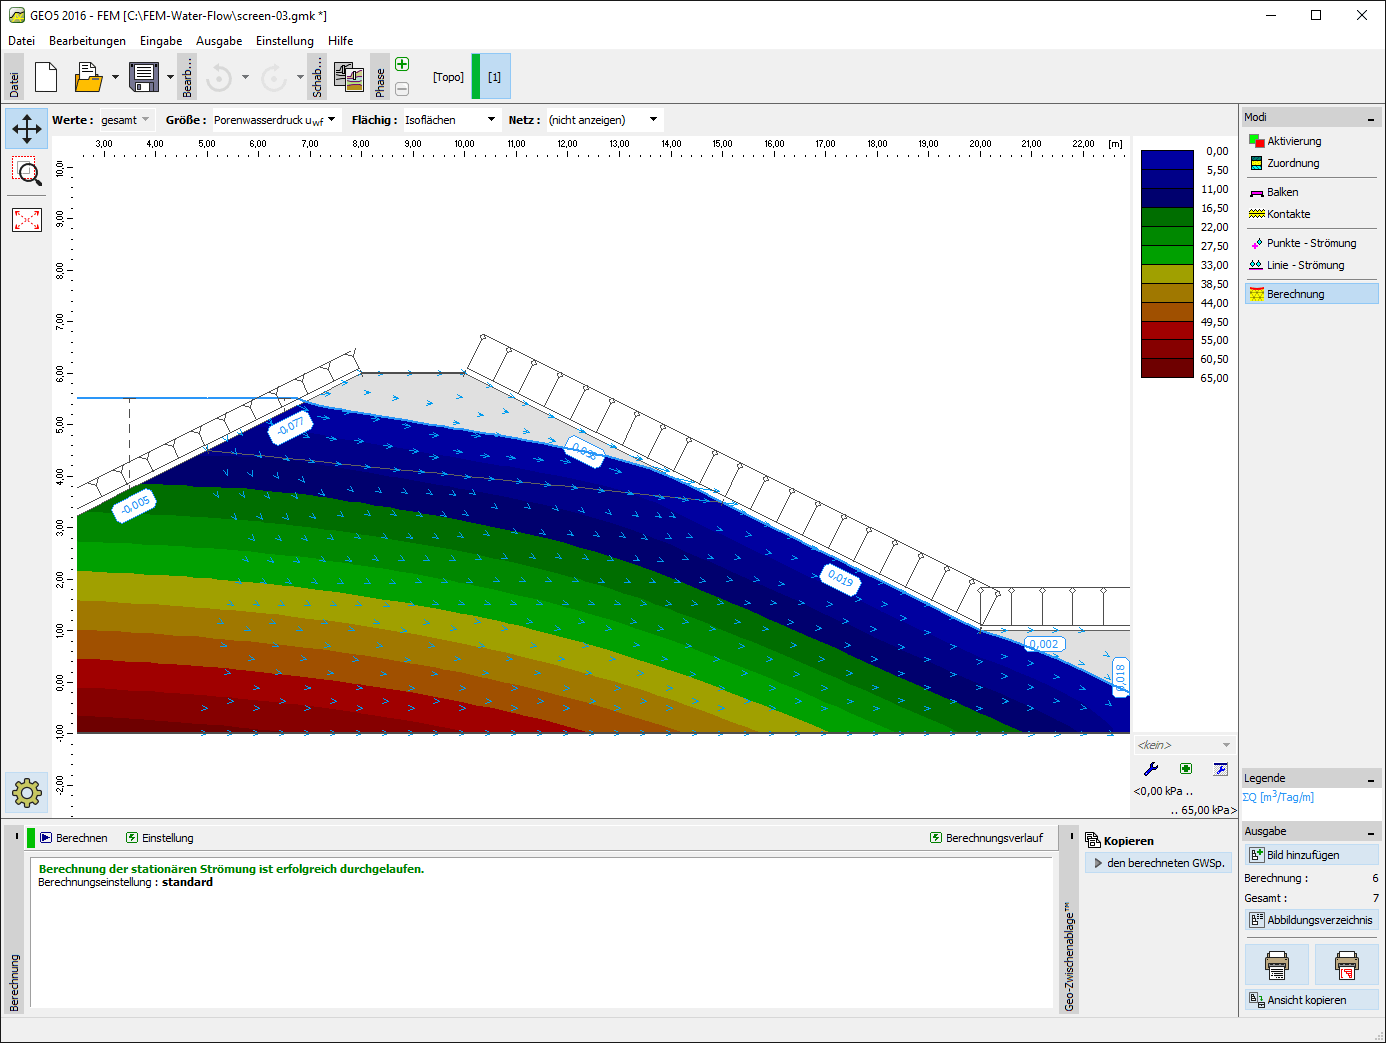 FEM - Wasserströmung : Visualisierung des Porenwasserdrucks